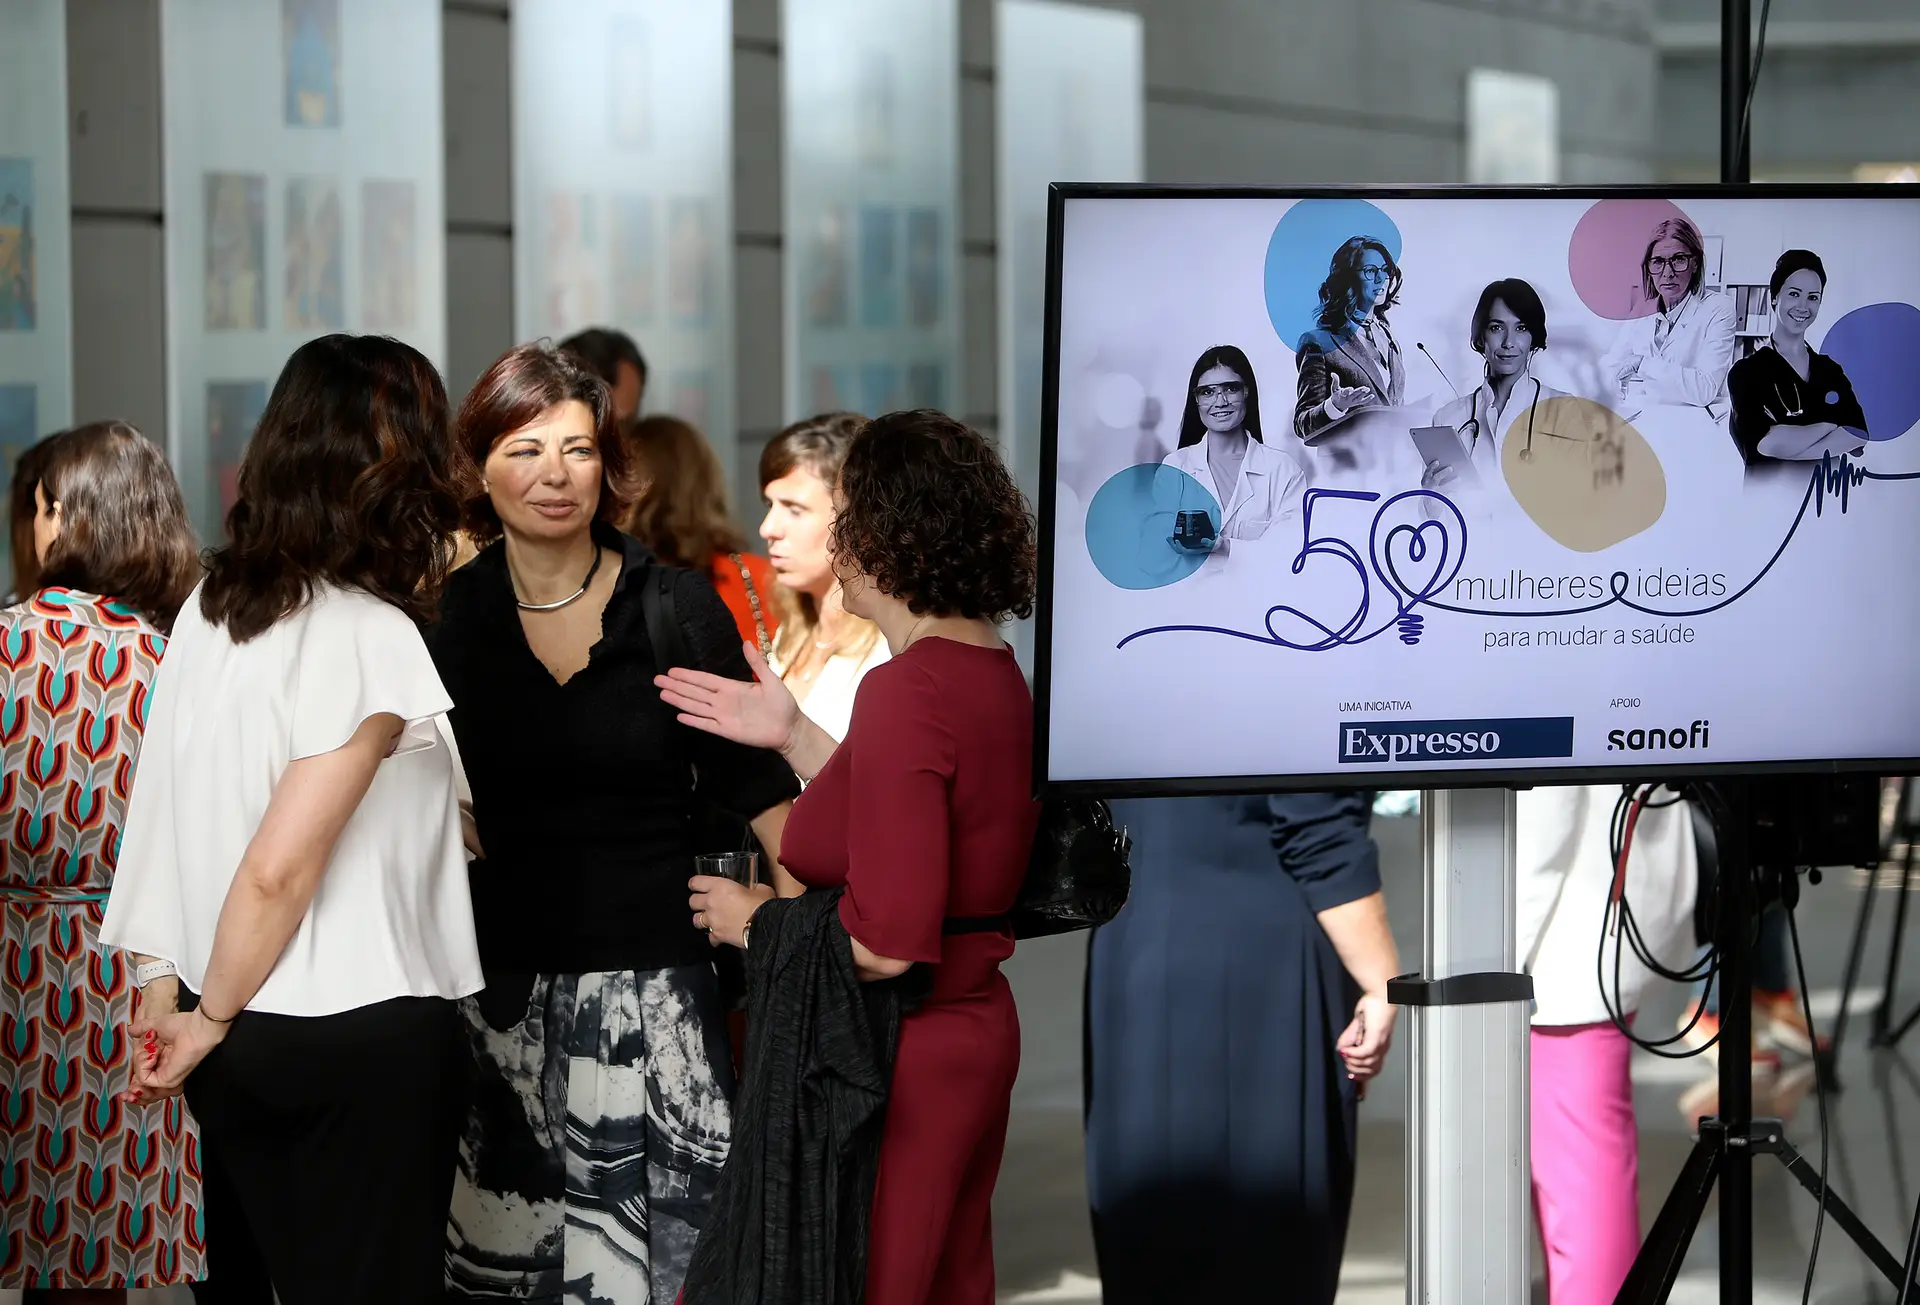 O projeto 50 mulheres, 50 ideias para a Saúde iniciou em março. Até ao momento, são conhecidas 45 ideias e estão por divulgar apenas 5